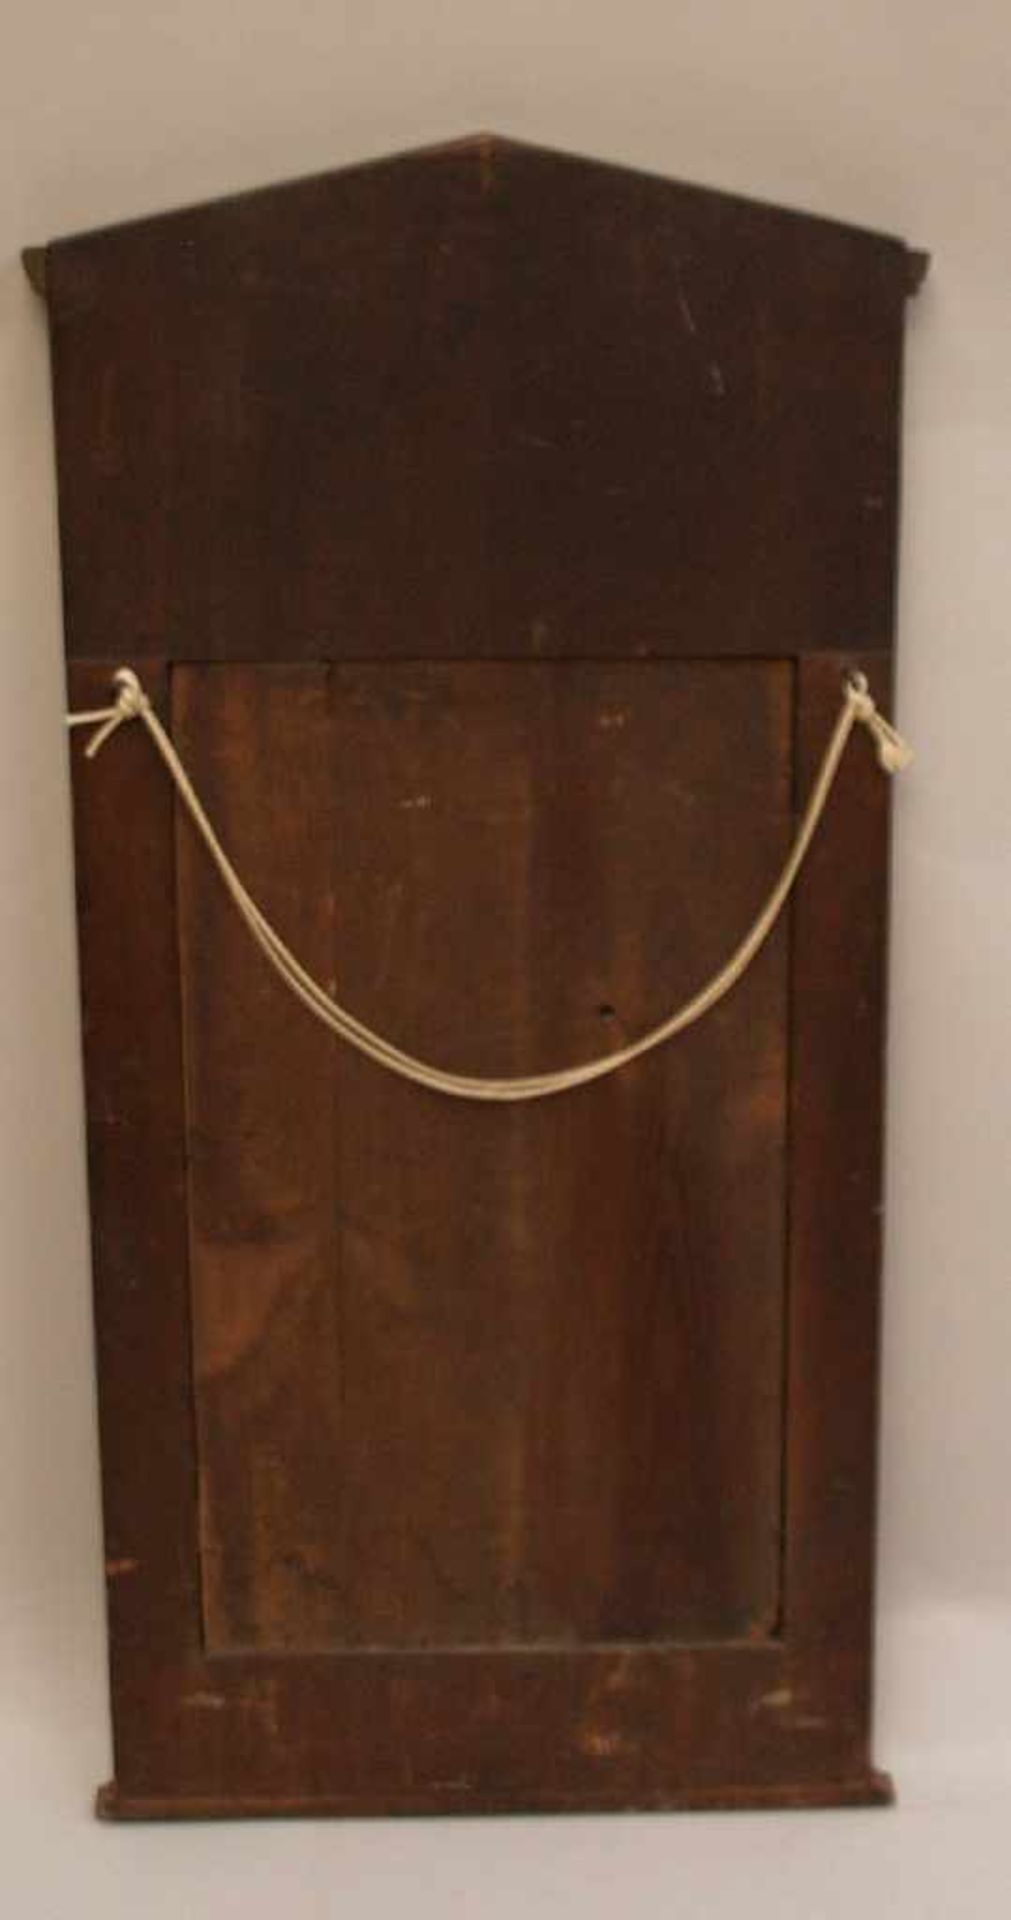 Biedermeier-Spiegel - 19.Jh.,Kirsche, rechteckige Form mit klassischem Spitzgiebel,Rankenintarsien, - Bild 4 aus 4